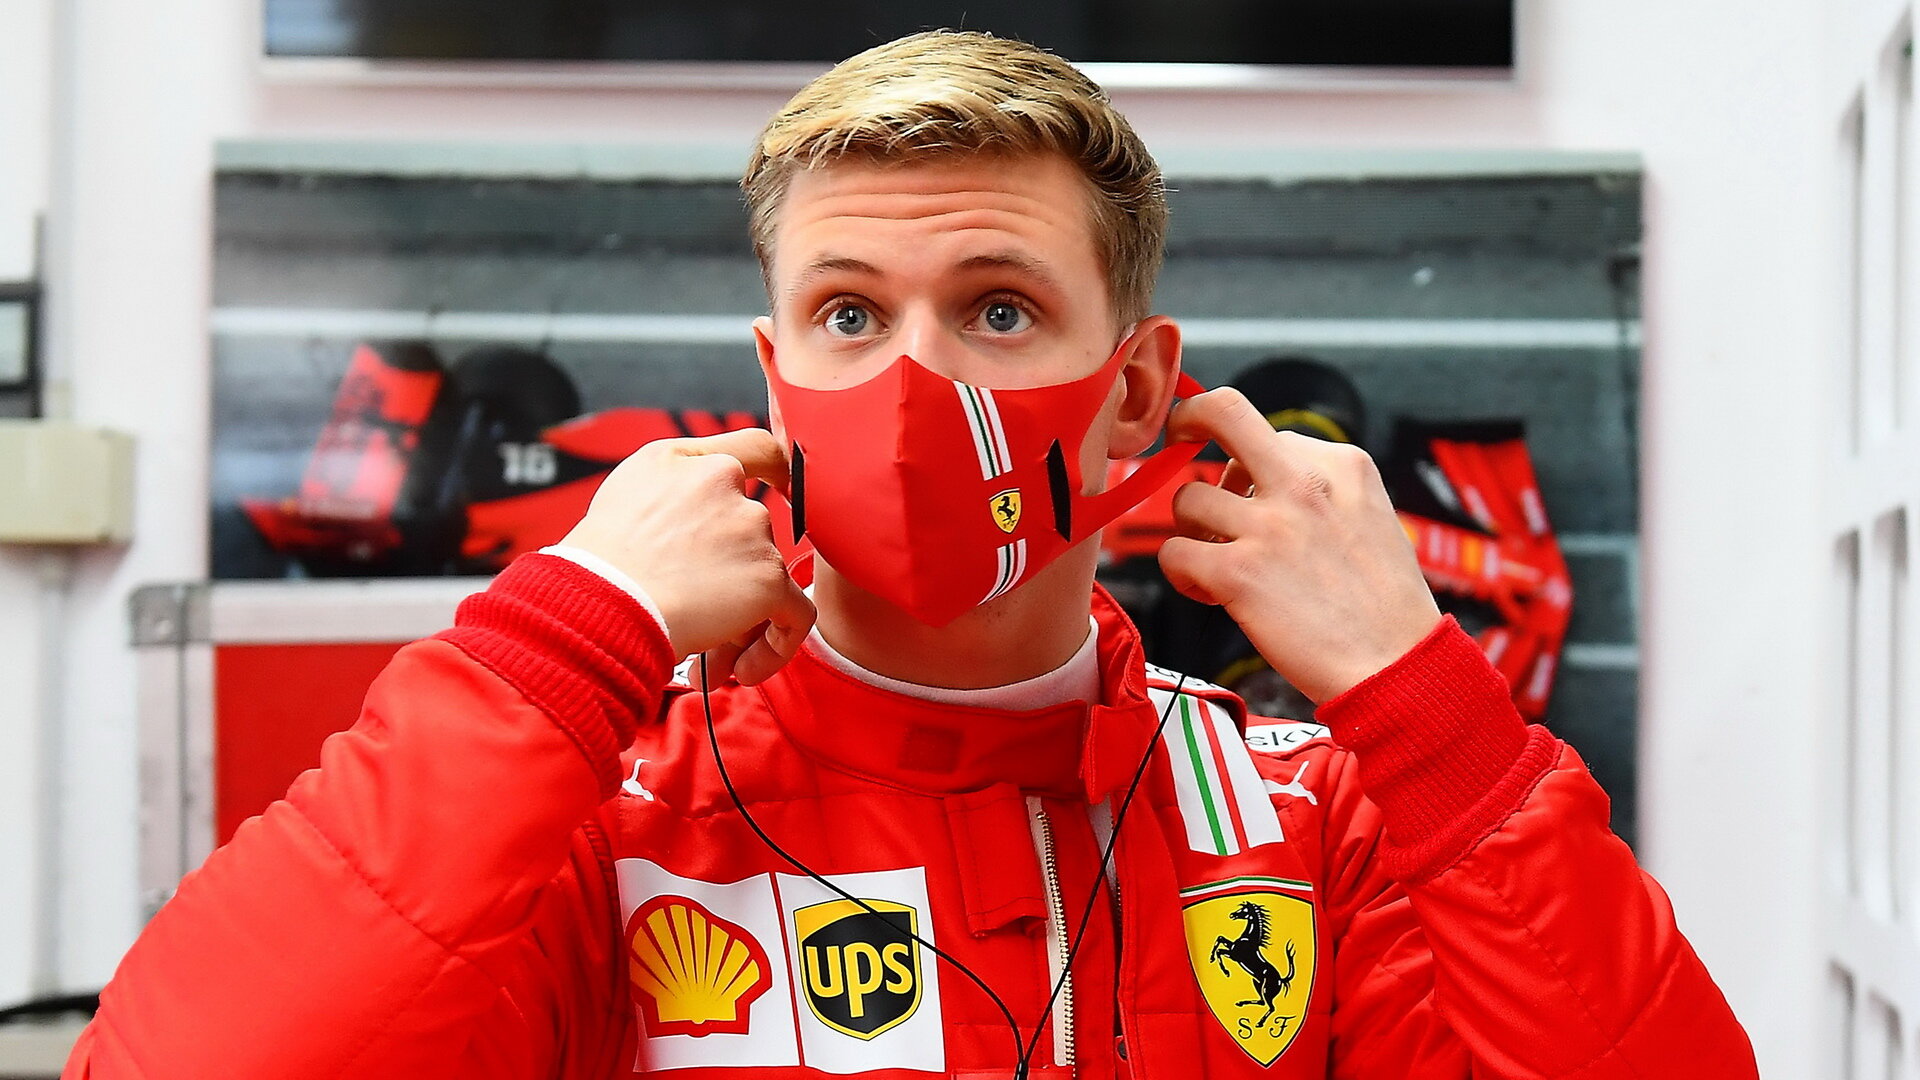 Mick Schumacher těží z podpory Ferrari, podle Ecclestonea však začíná se špatným týmem